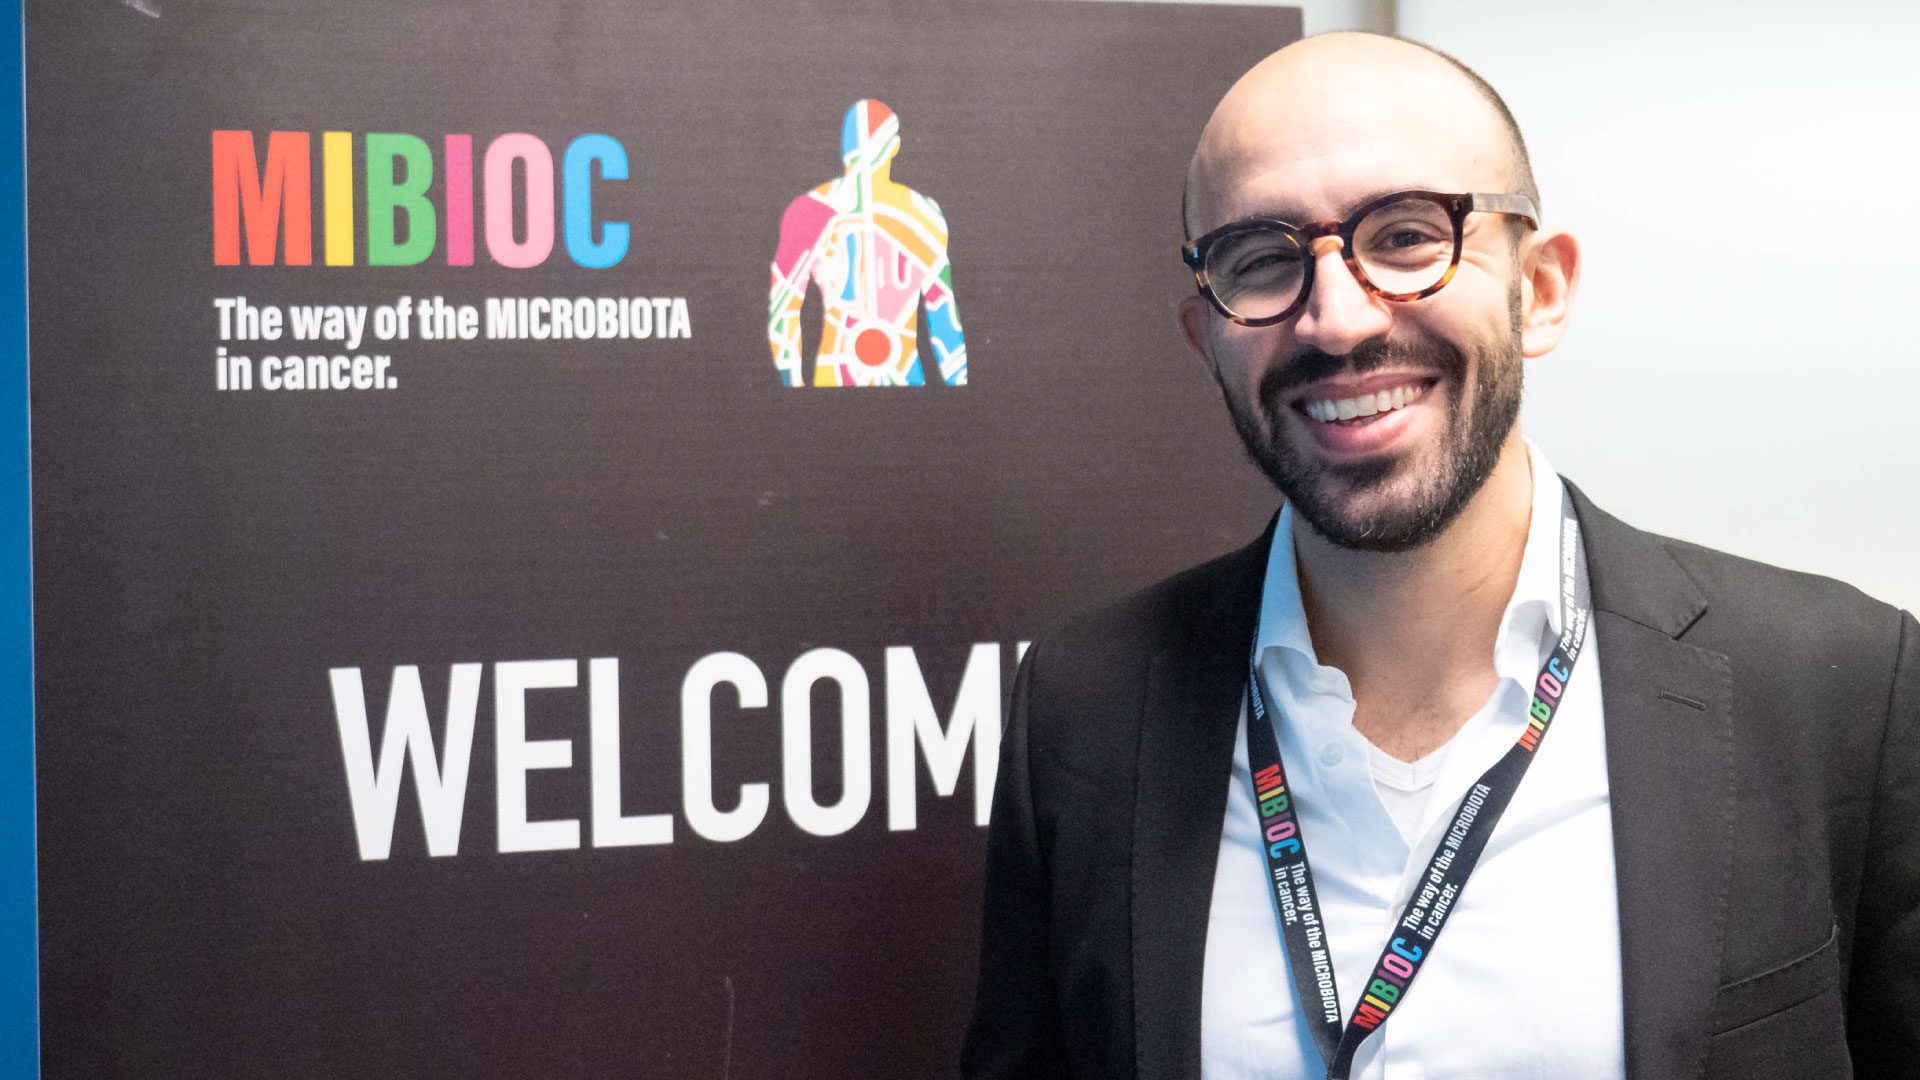 Miguel Reis Ferreira - Tumore prostata: modificare il microbiota intestinale per ridurre gli effetti collaterali della radioterapia